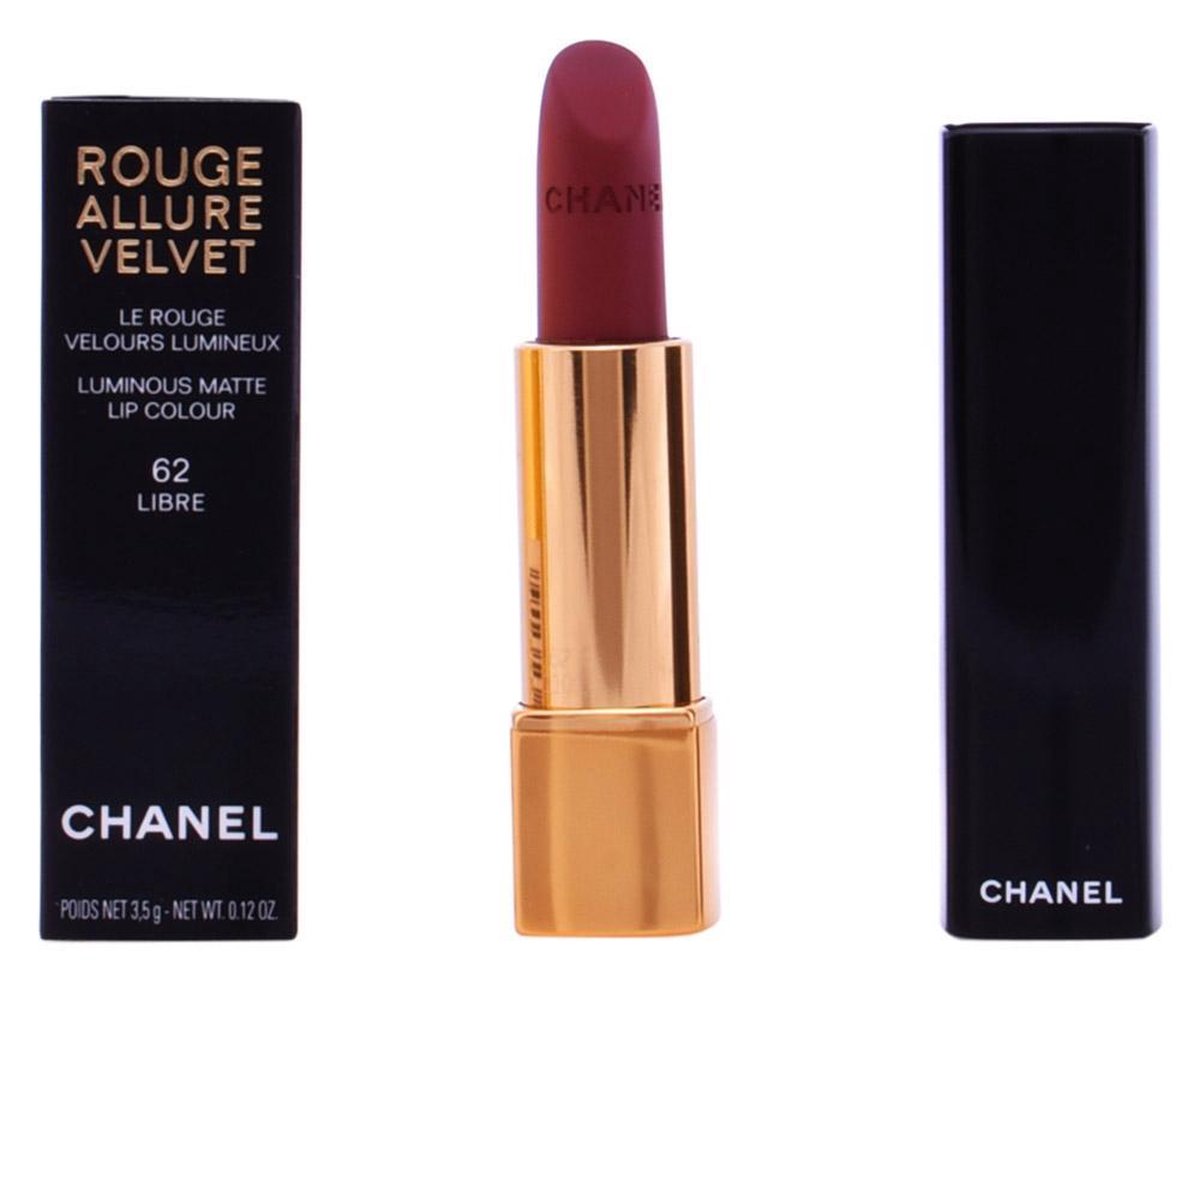 CHANEL Rouge Allure Velvet Luminous Matte Lip Colour, 62 Llibre at